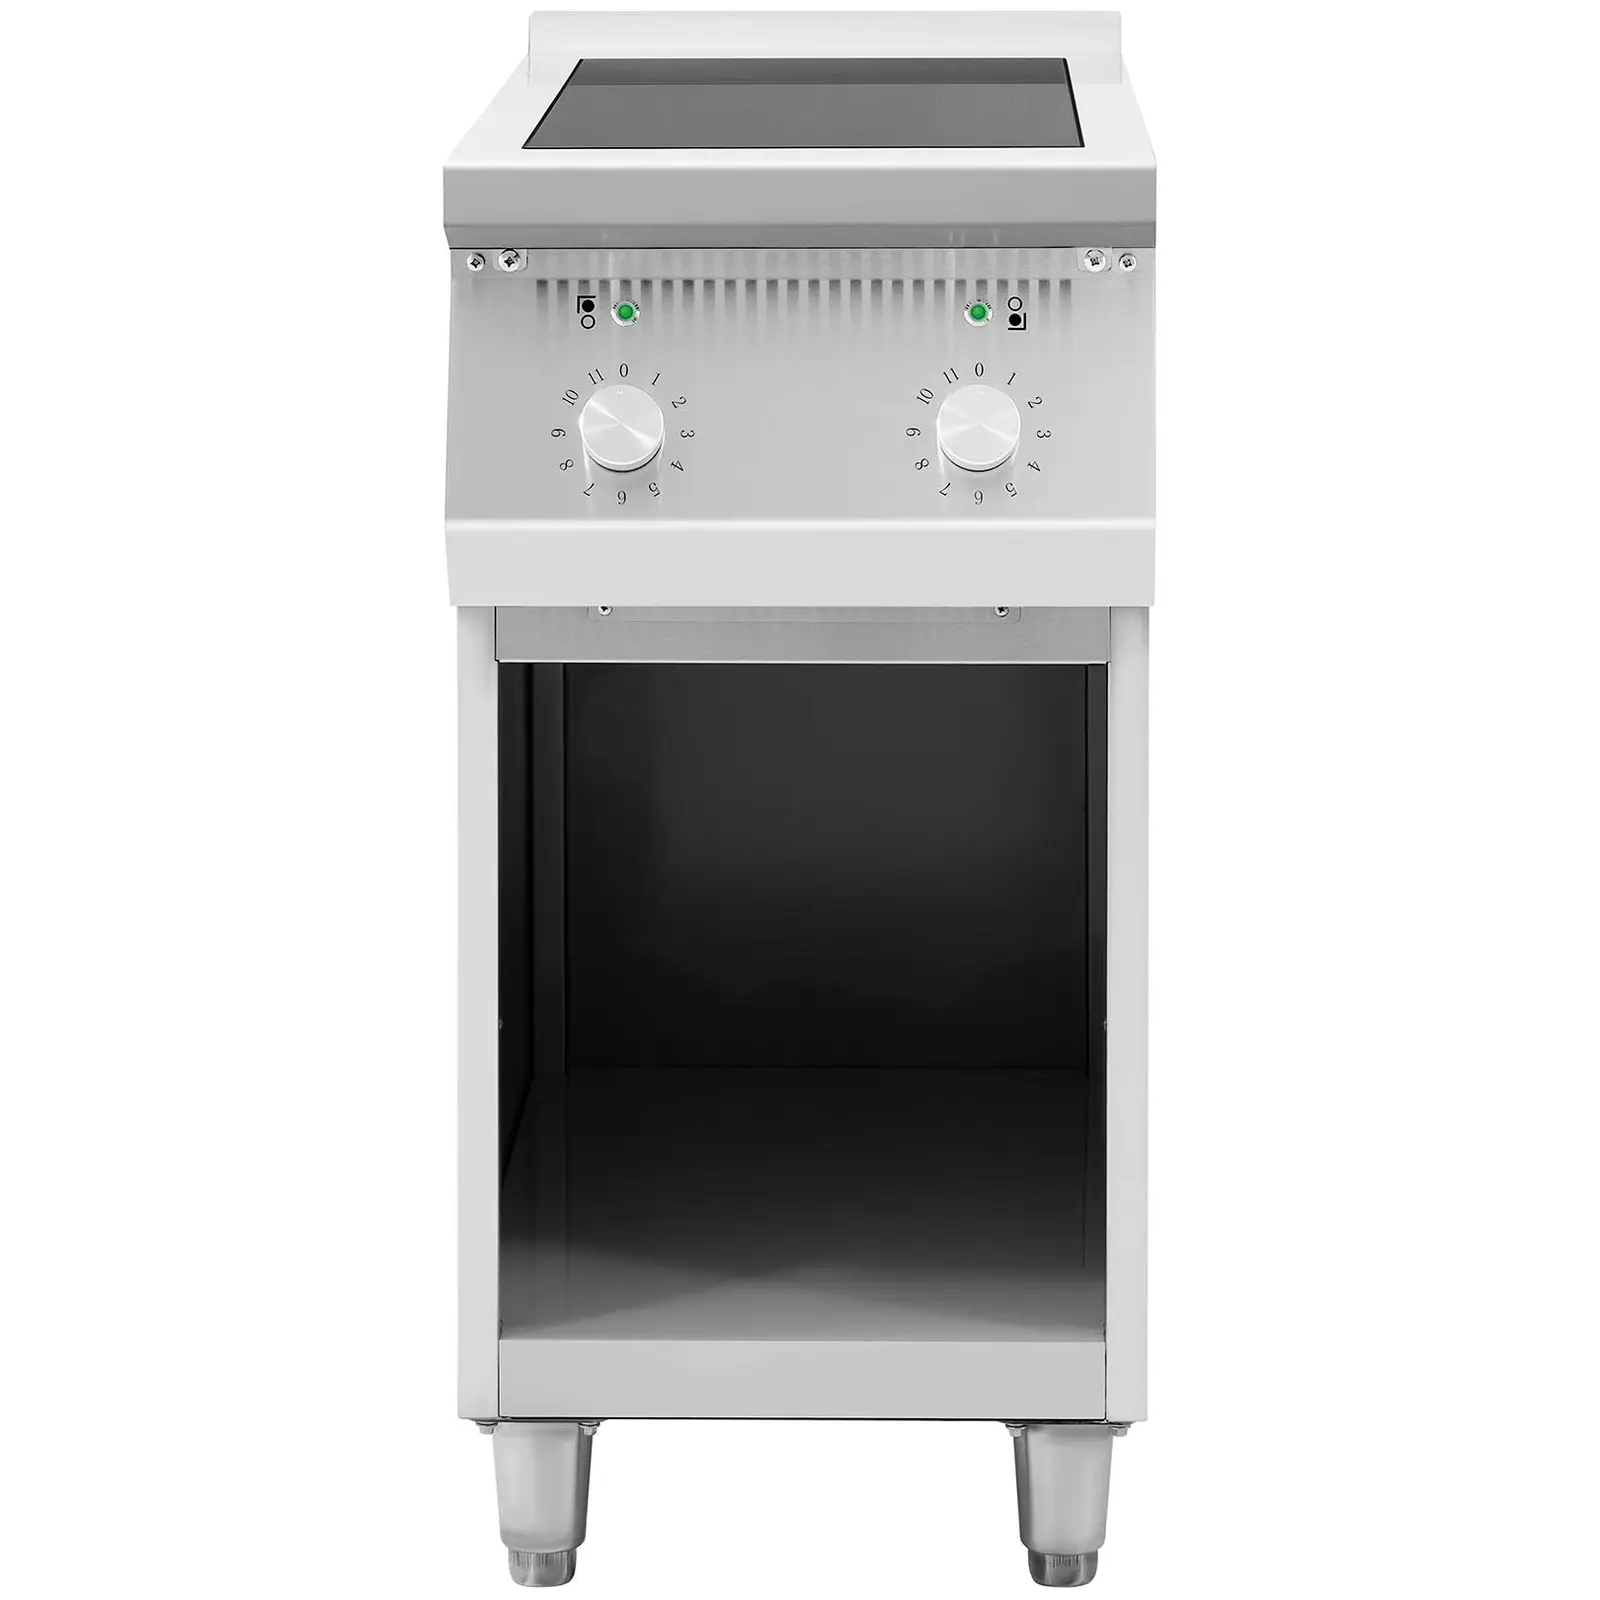 Cuisinière induction - 8 500 W - 2 plaques de cuisson - jusqu'à 260 °C - Inox - Royal Catering